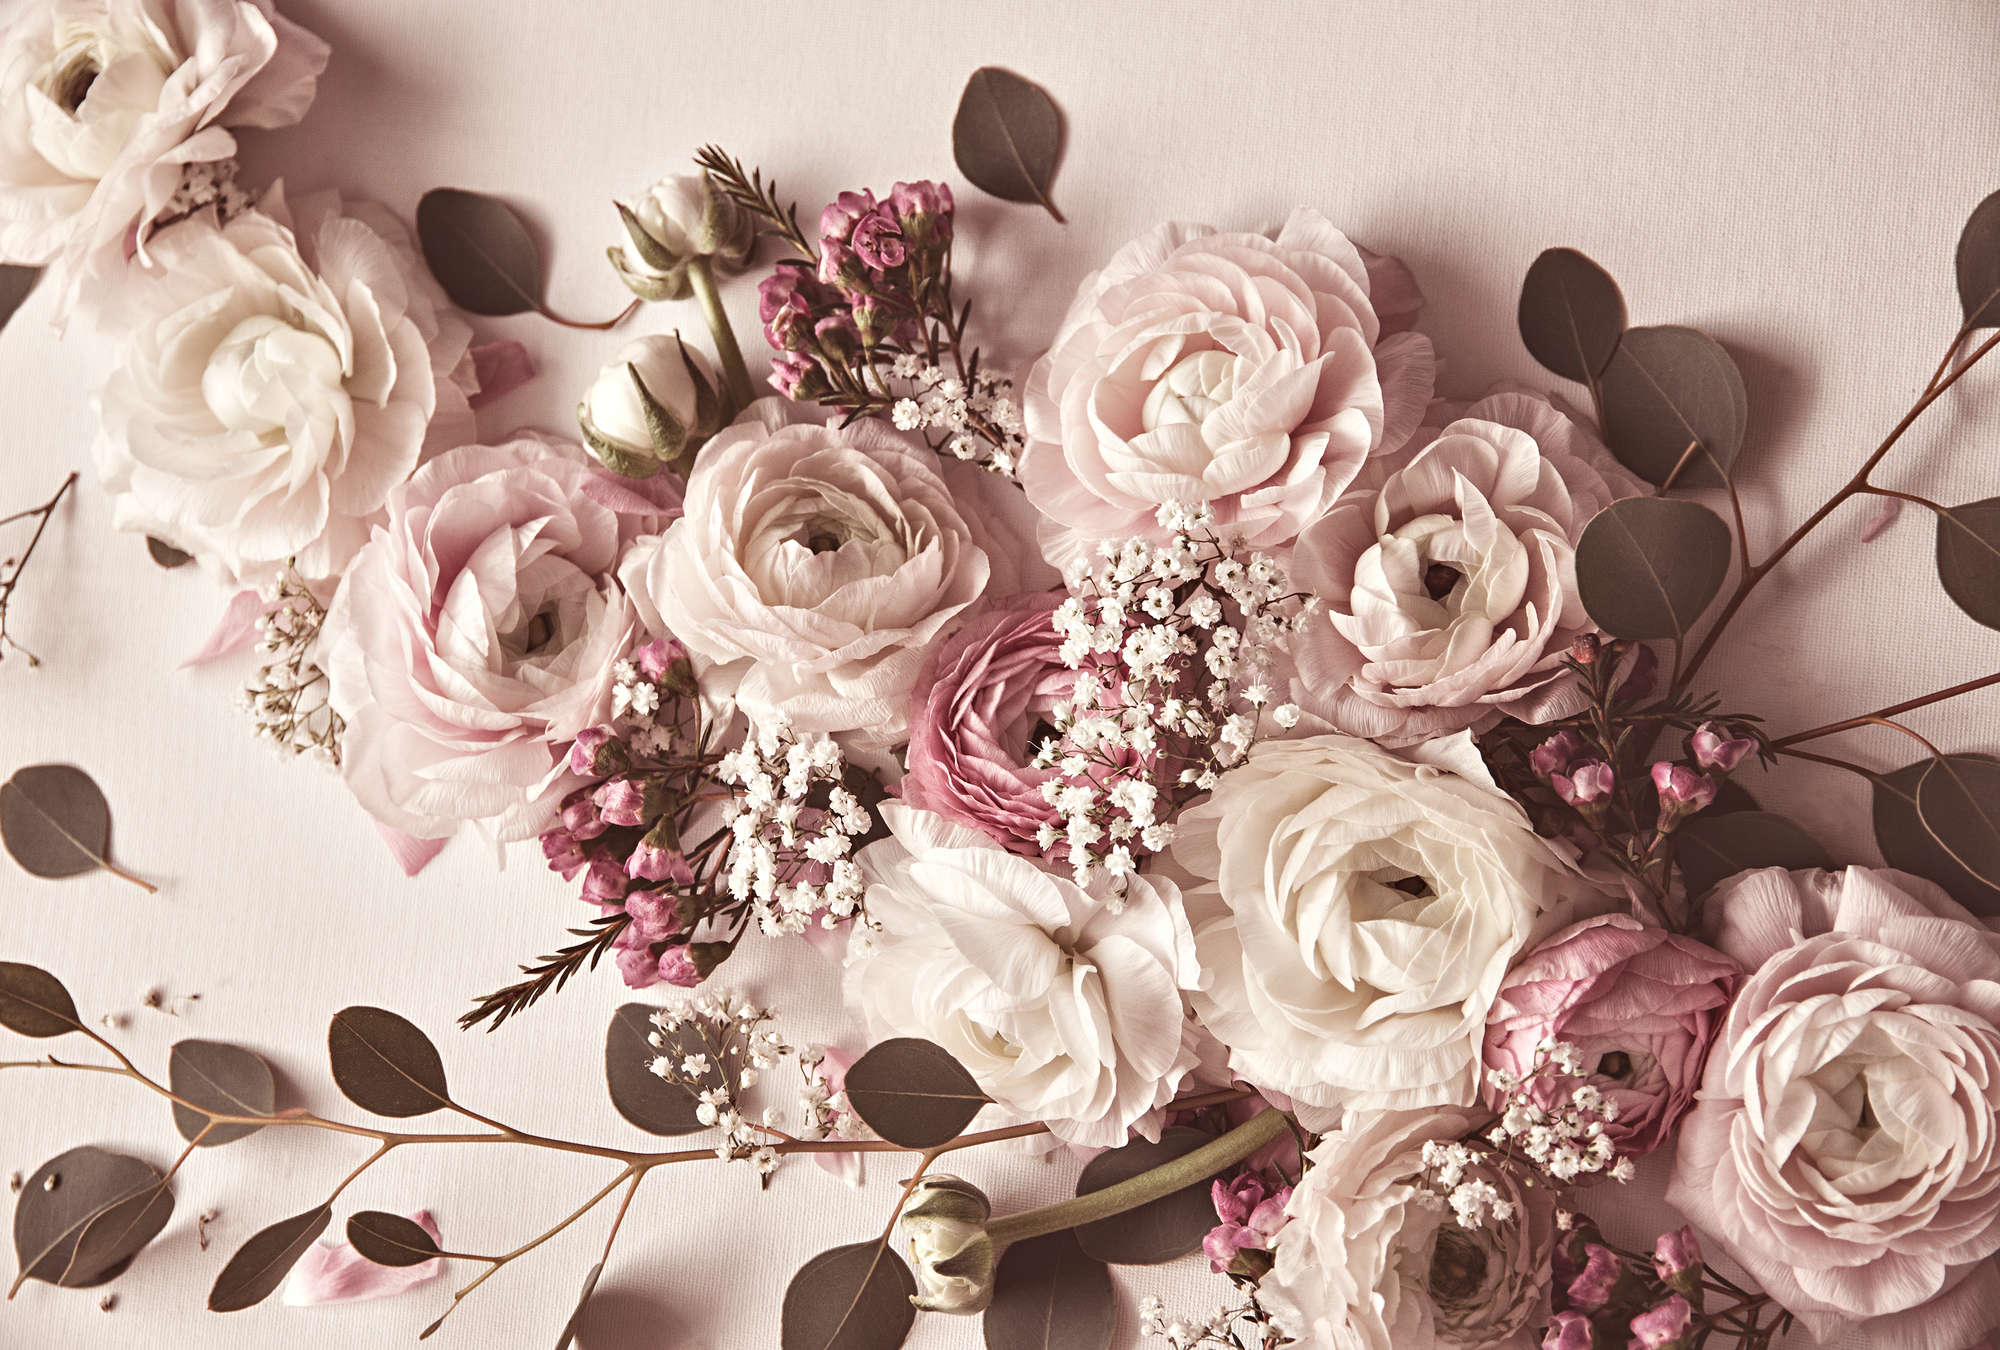             Papel pintado de rosas con joyas de flores XXL
        